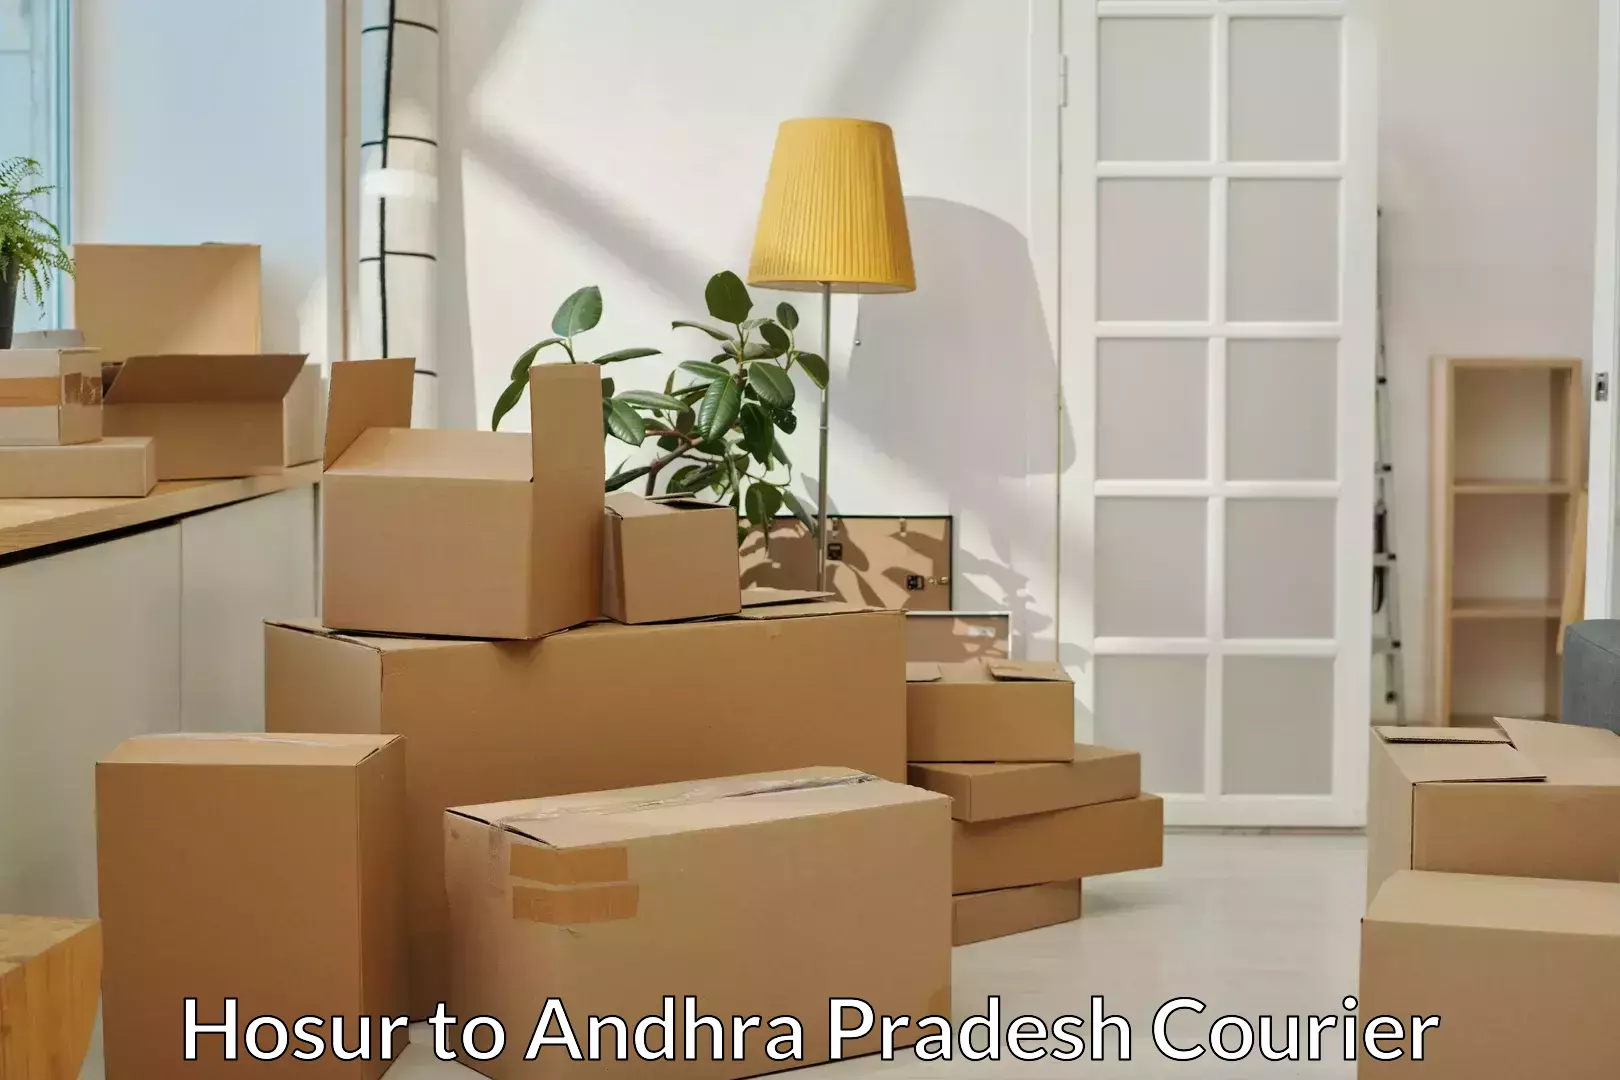 Furniture transport experts Hosur to Parvathipuram